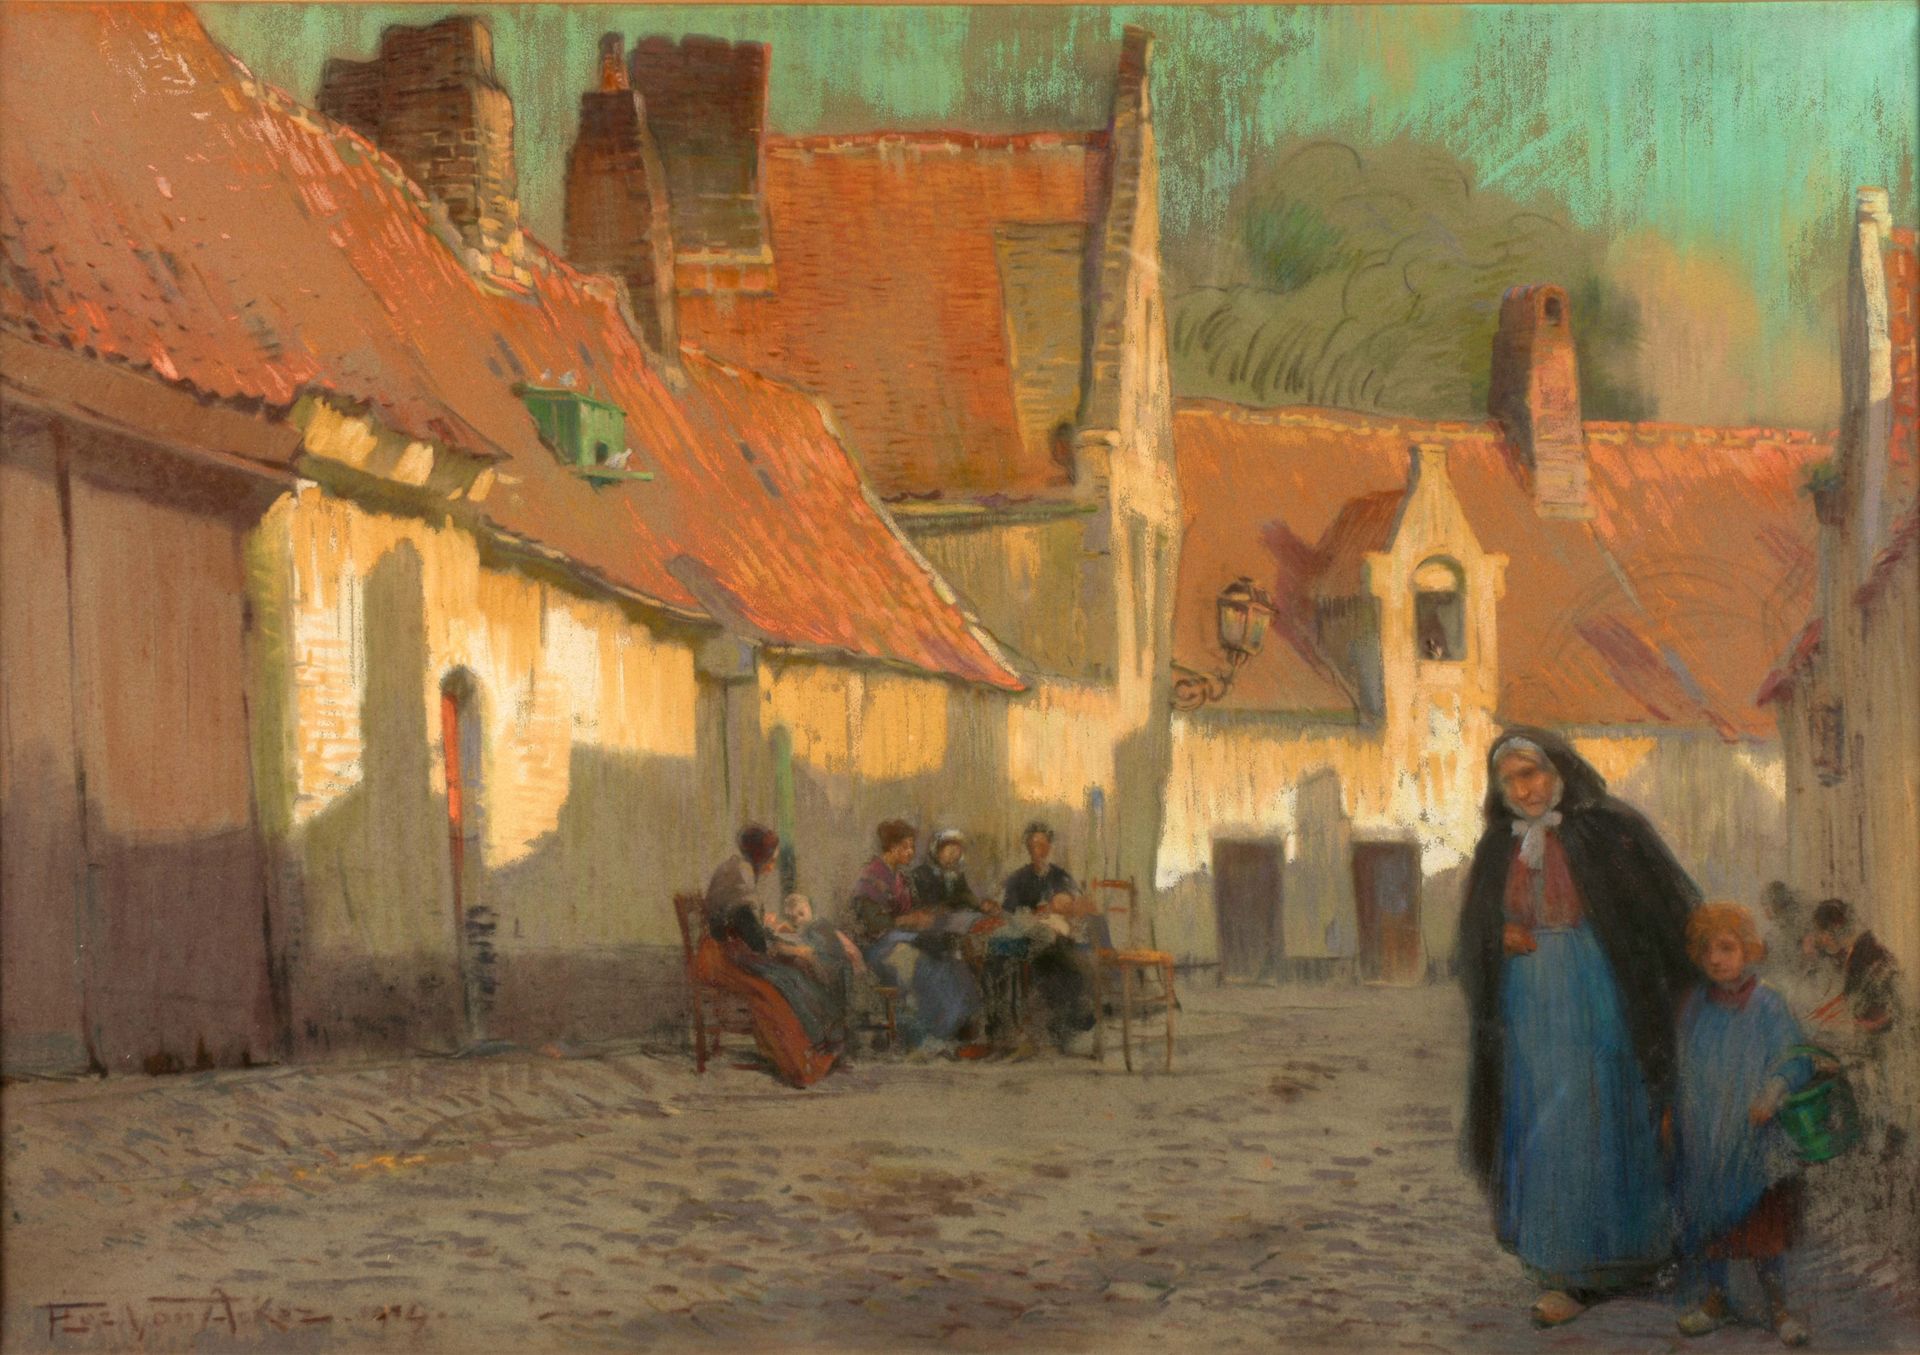 VAN ACKER, Flori (1858-1940) 在布鲁日的工厂里，有很多人在工作。

粉彩画(67 x 95 cm)，在画布上，有链接。现代生活